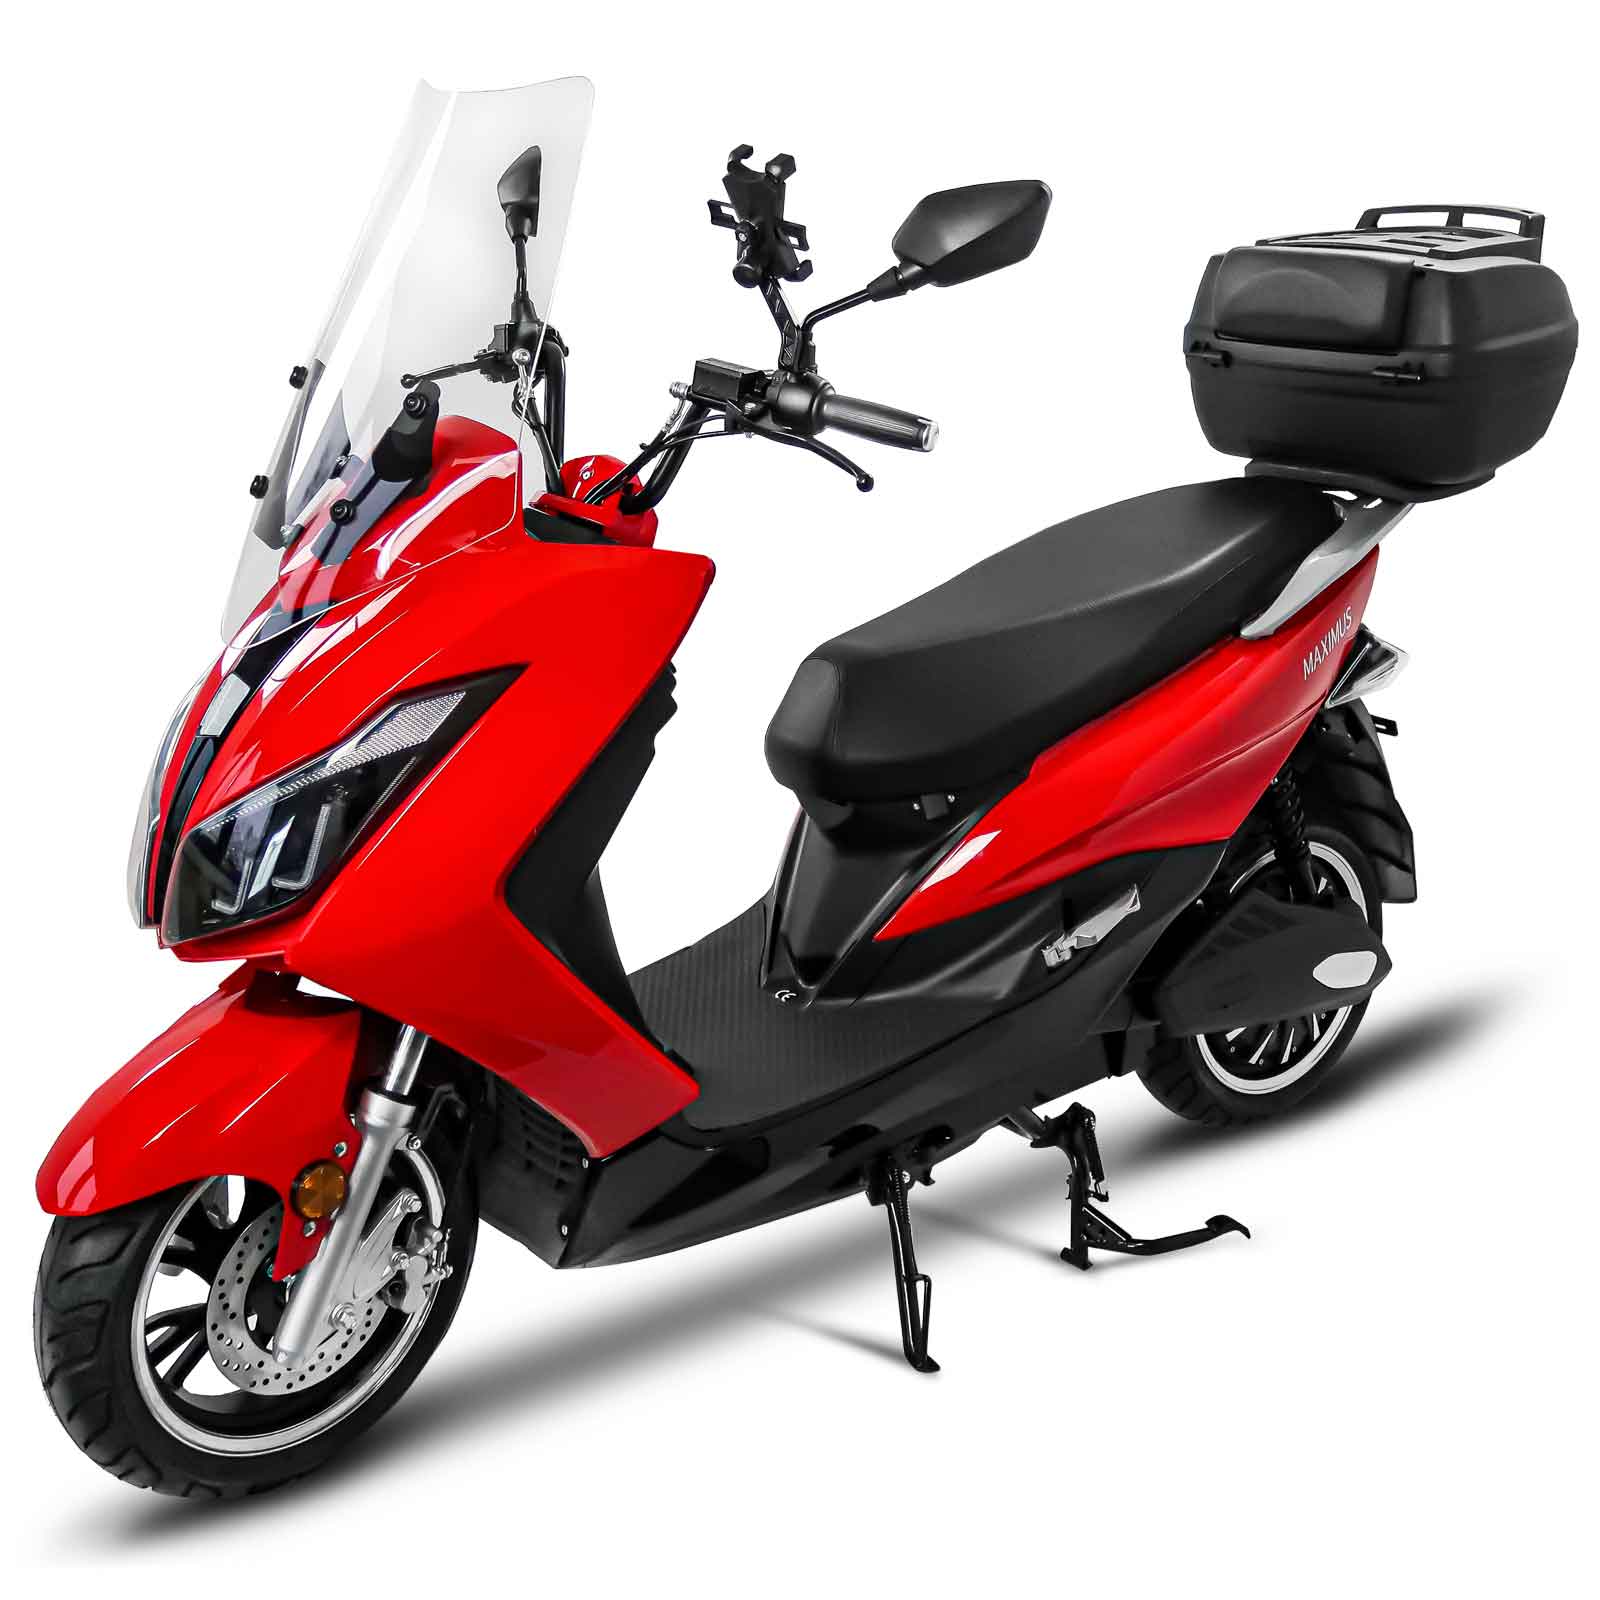 Handy am Moped/Motorrad befestigen ohne eine Halterung zu kaufen